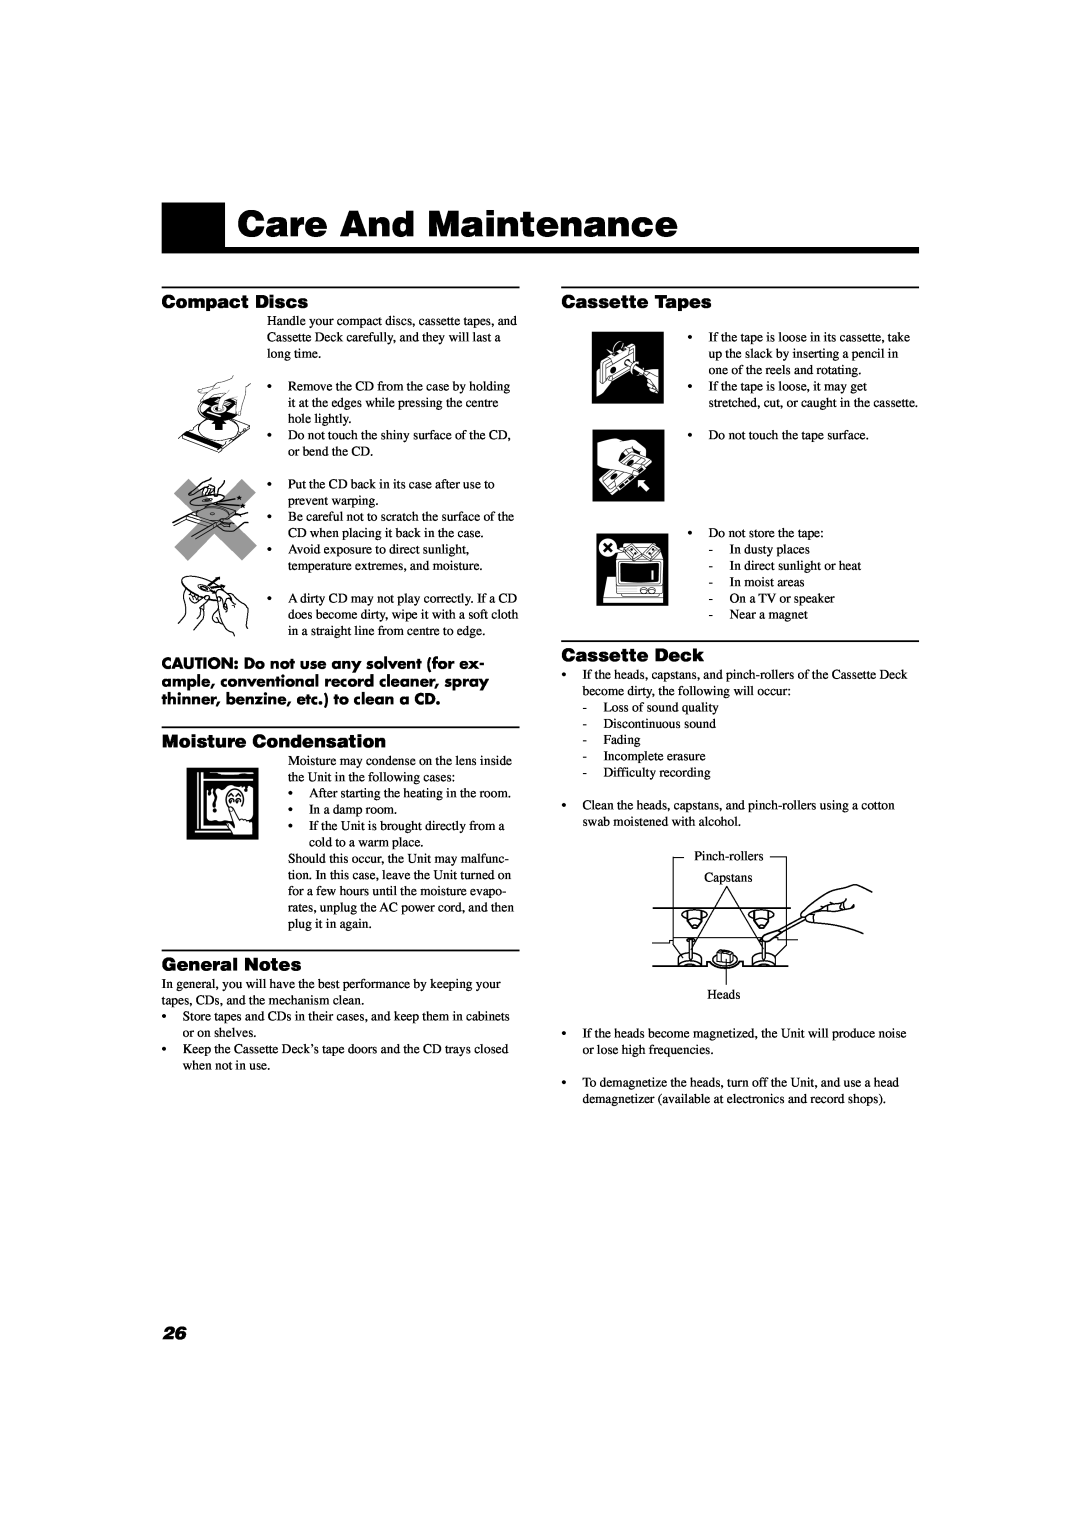 JVC SP-D302 manual Care And Maintenance, Compact Discs, Moisture Condensation, General Notes, Cassette Tapes, Cassette Deck 